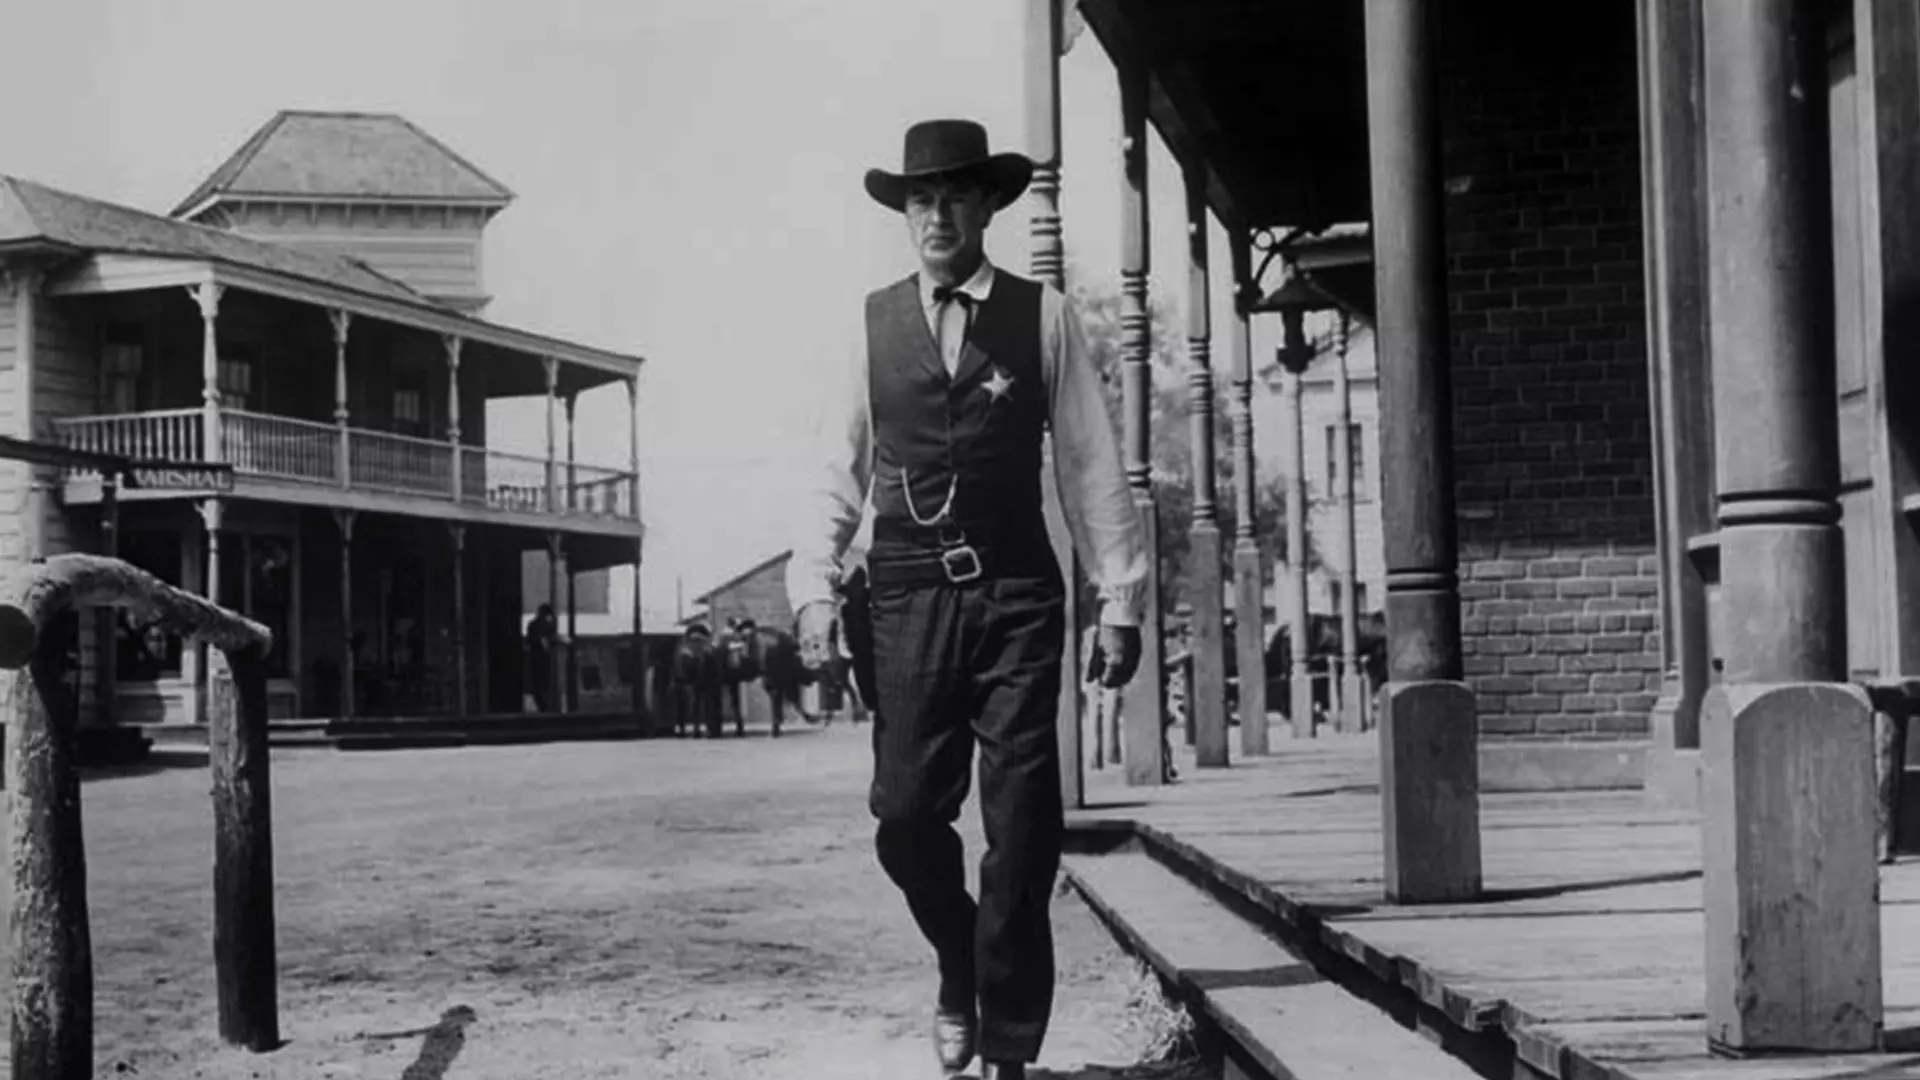 مارشال وین کین در حال راه رفتن در فیلم ماجرای نیمروز